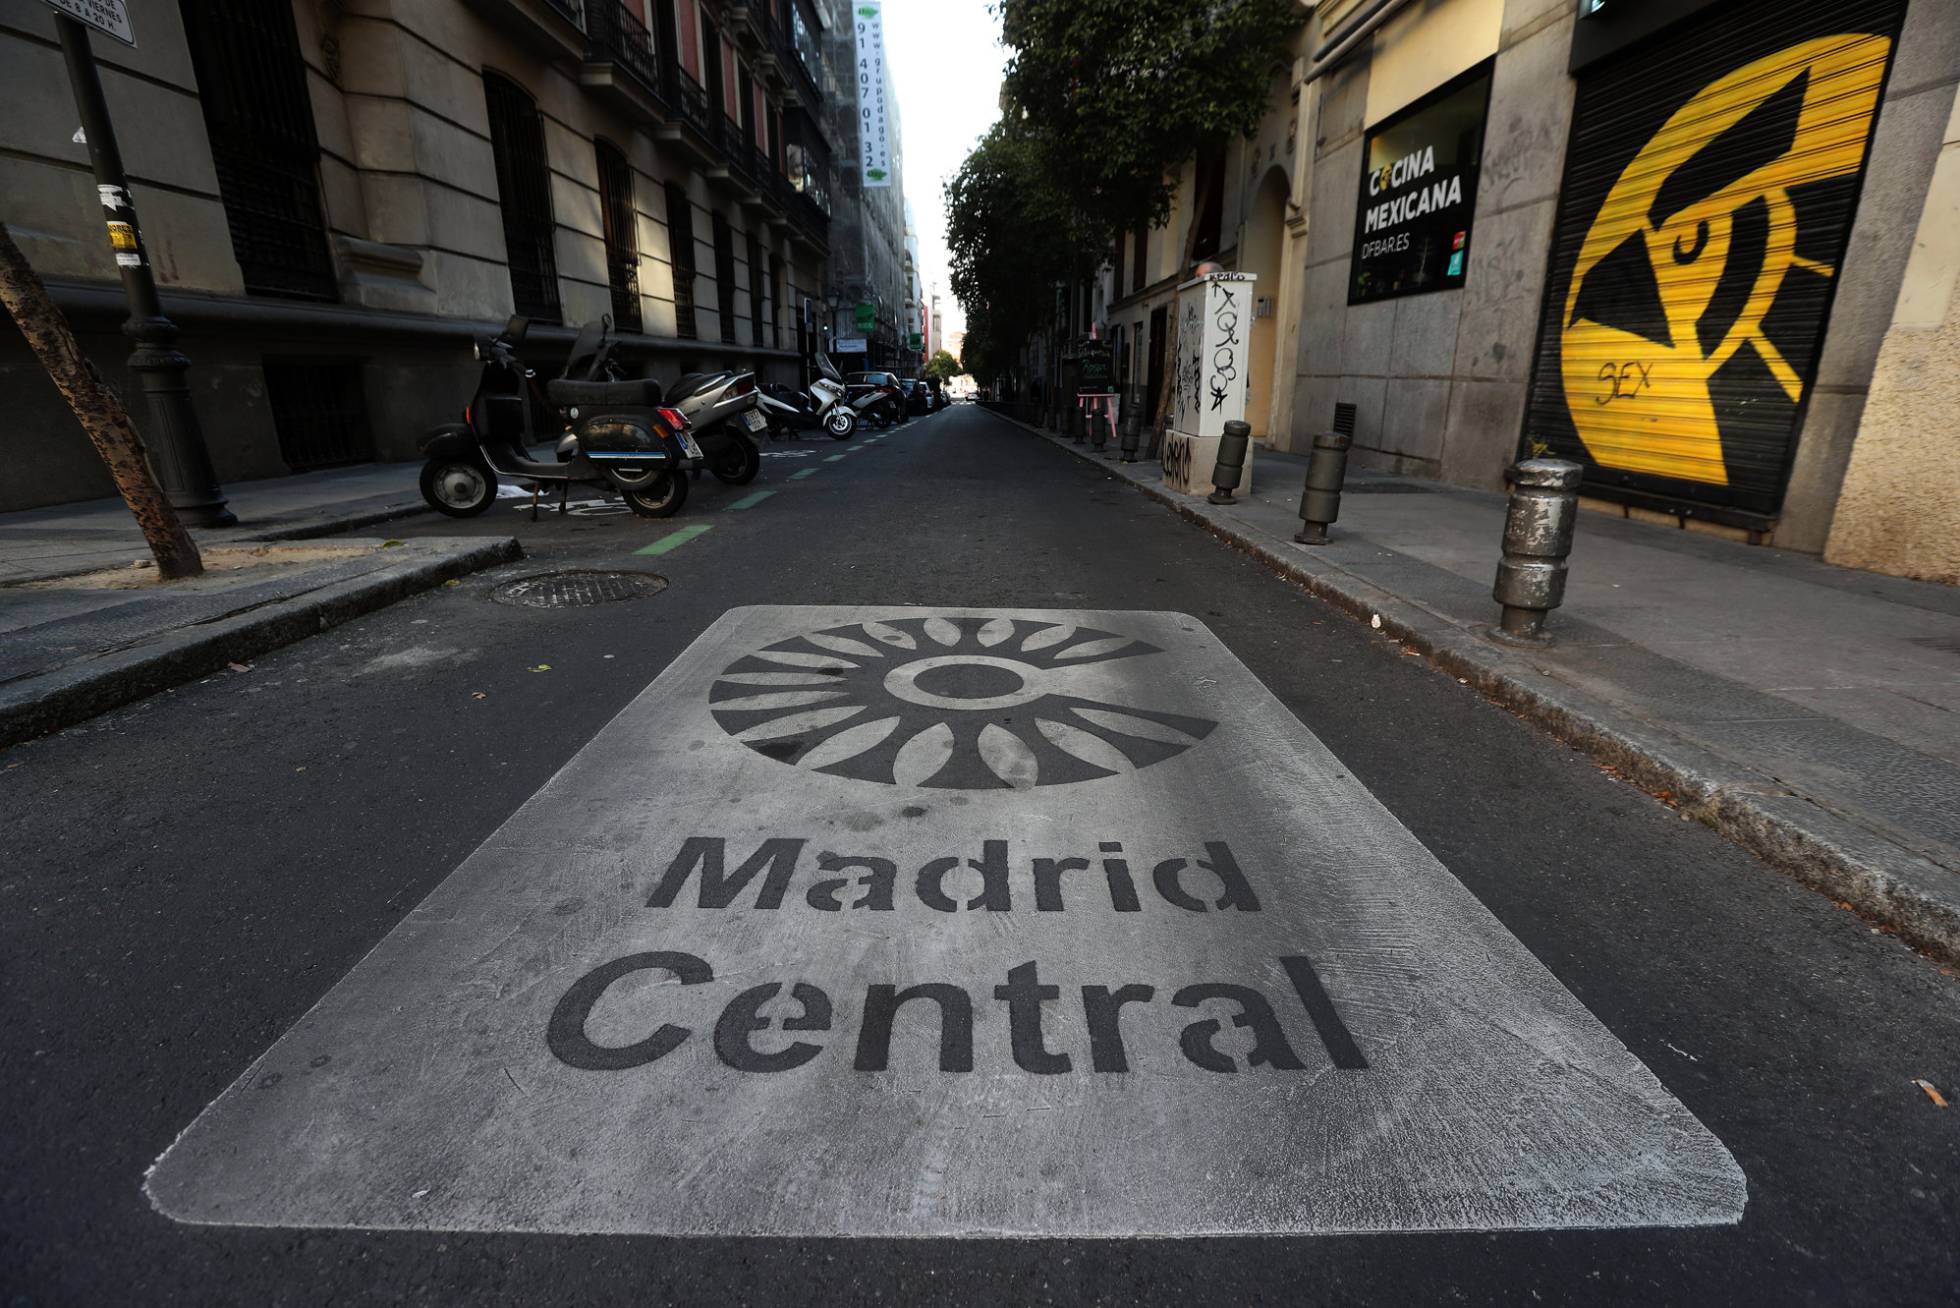 Una señal en el suelo informa sobre la entrada a Madrid Central.